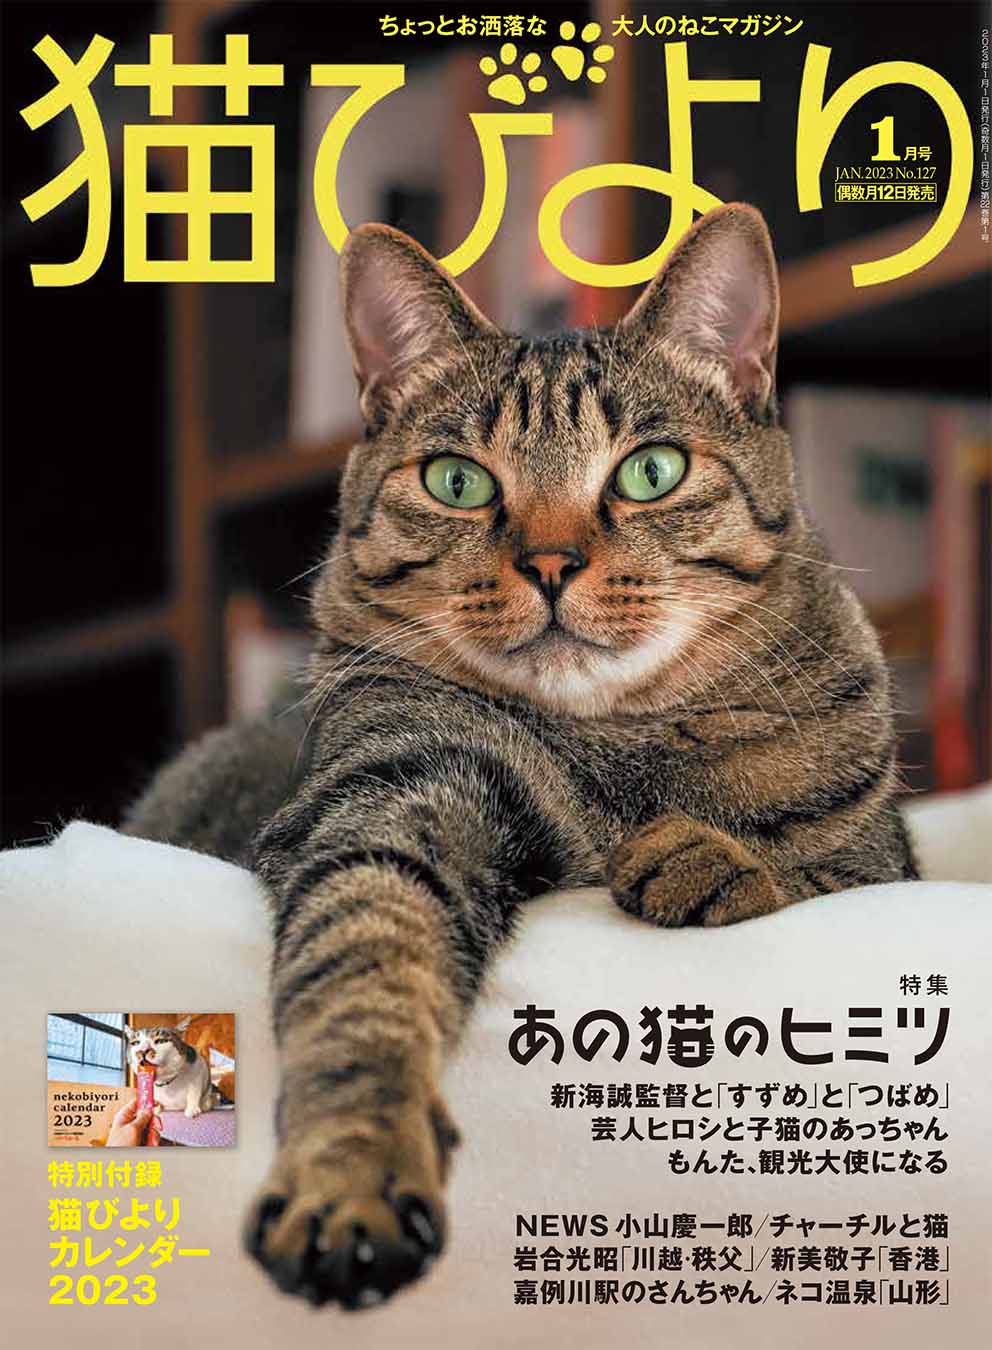 猫びより 猫びより 1月号発売中 Nekobiyori Jp Twitter